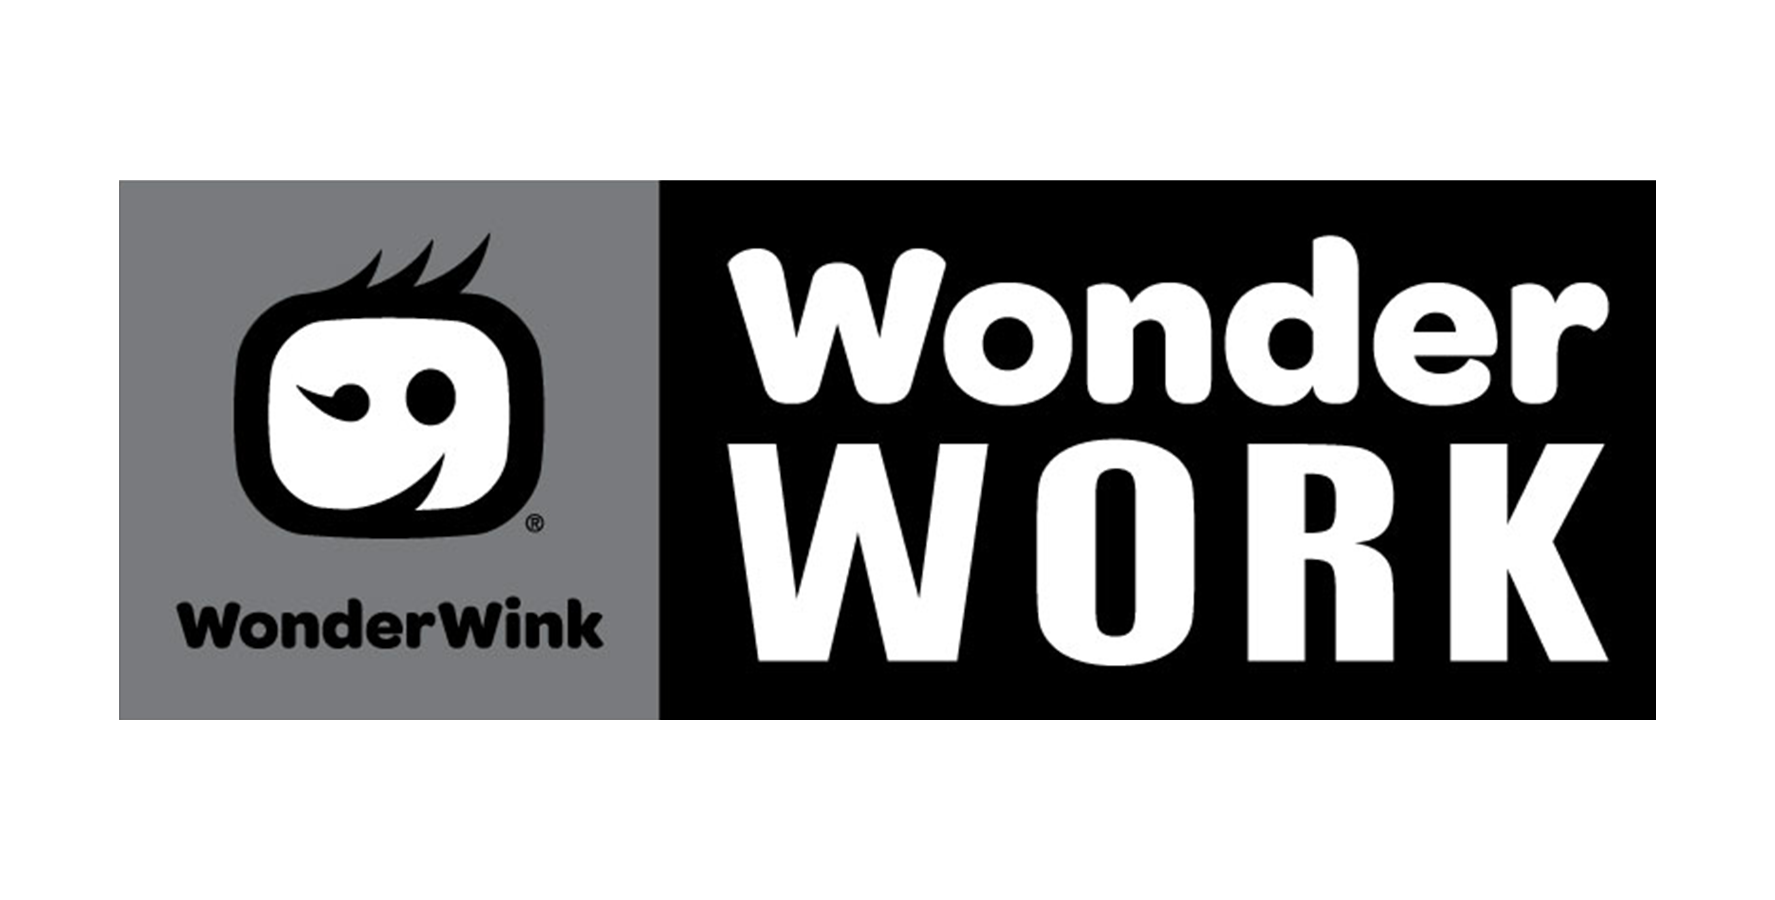 WonderWink Wonderwork Scrubs